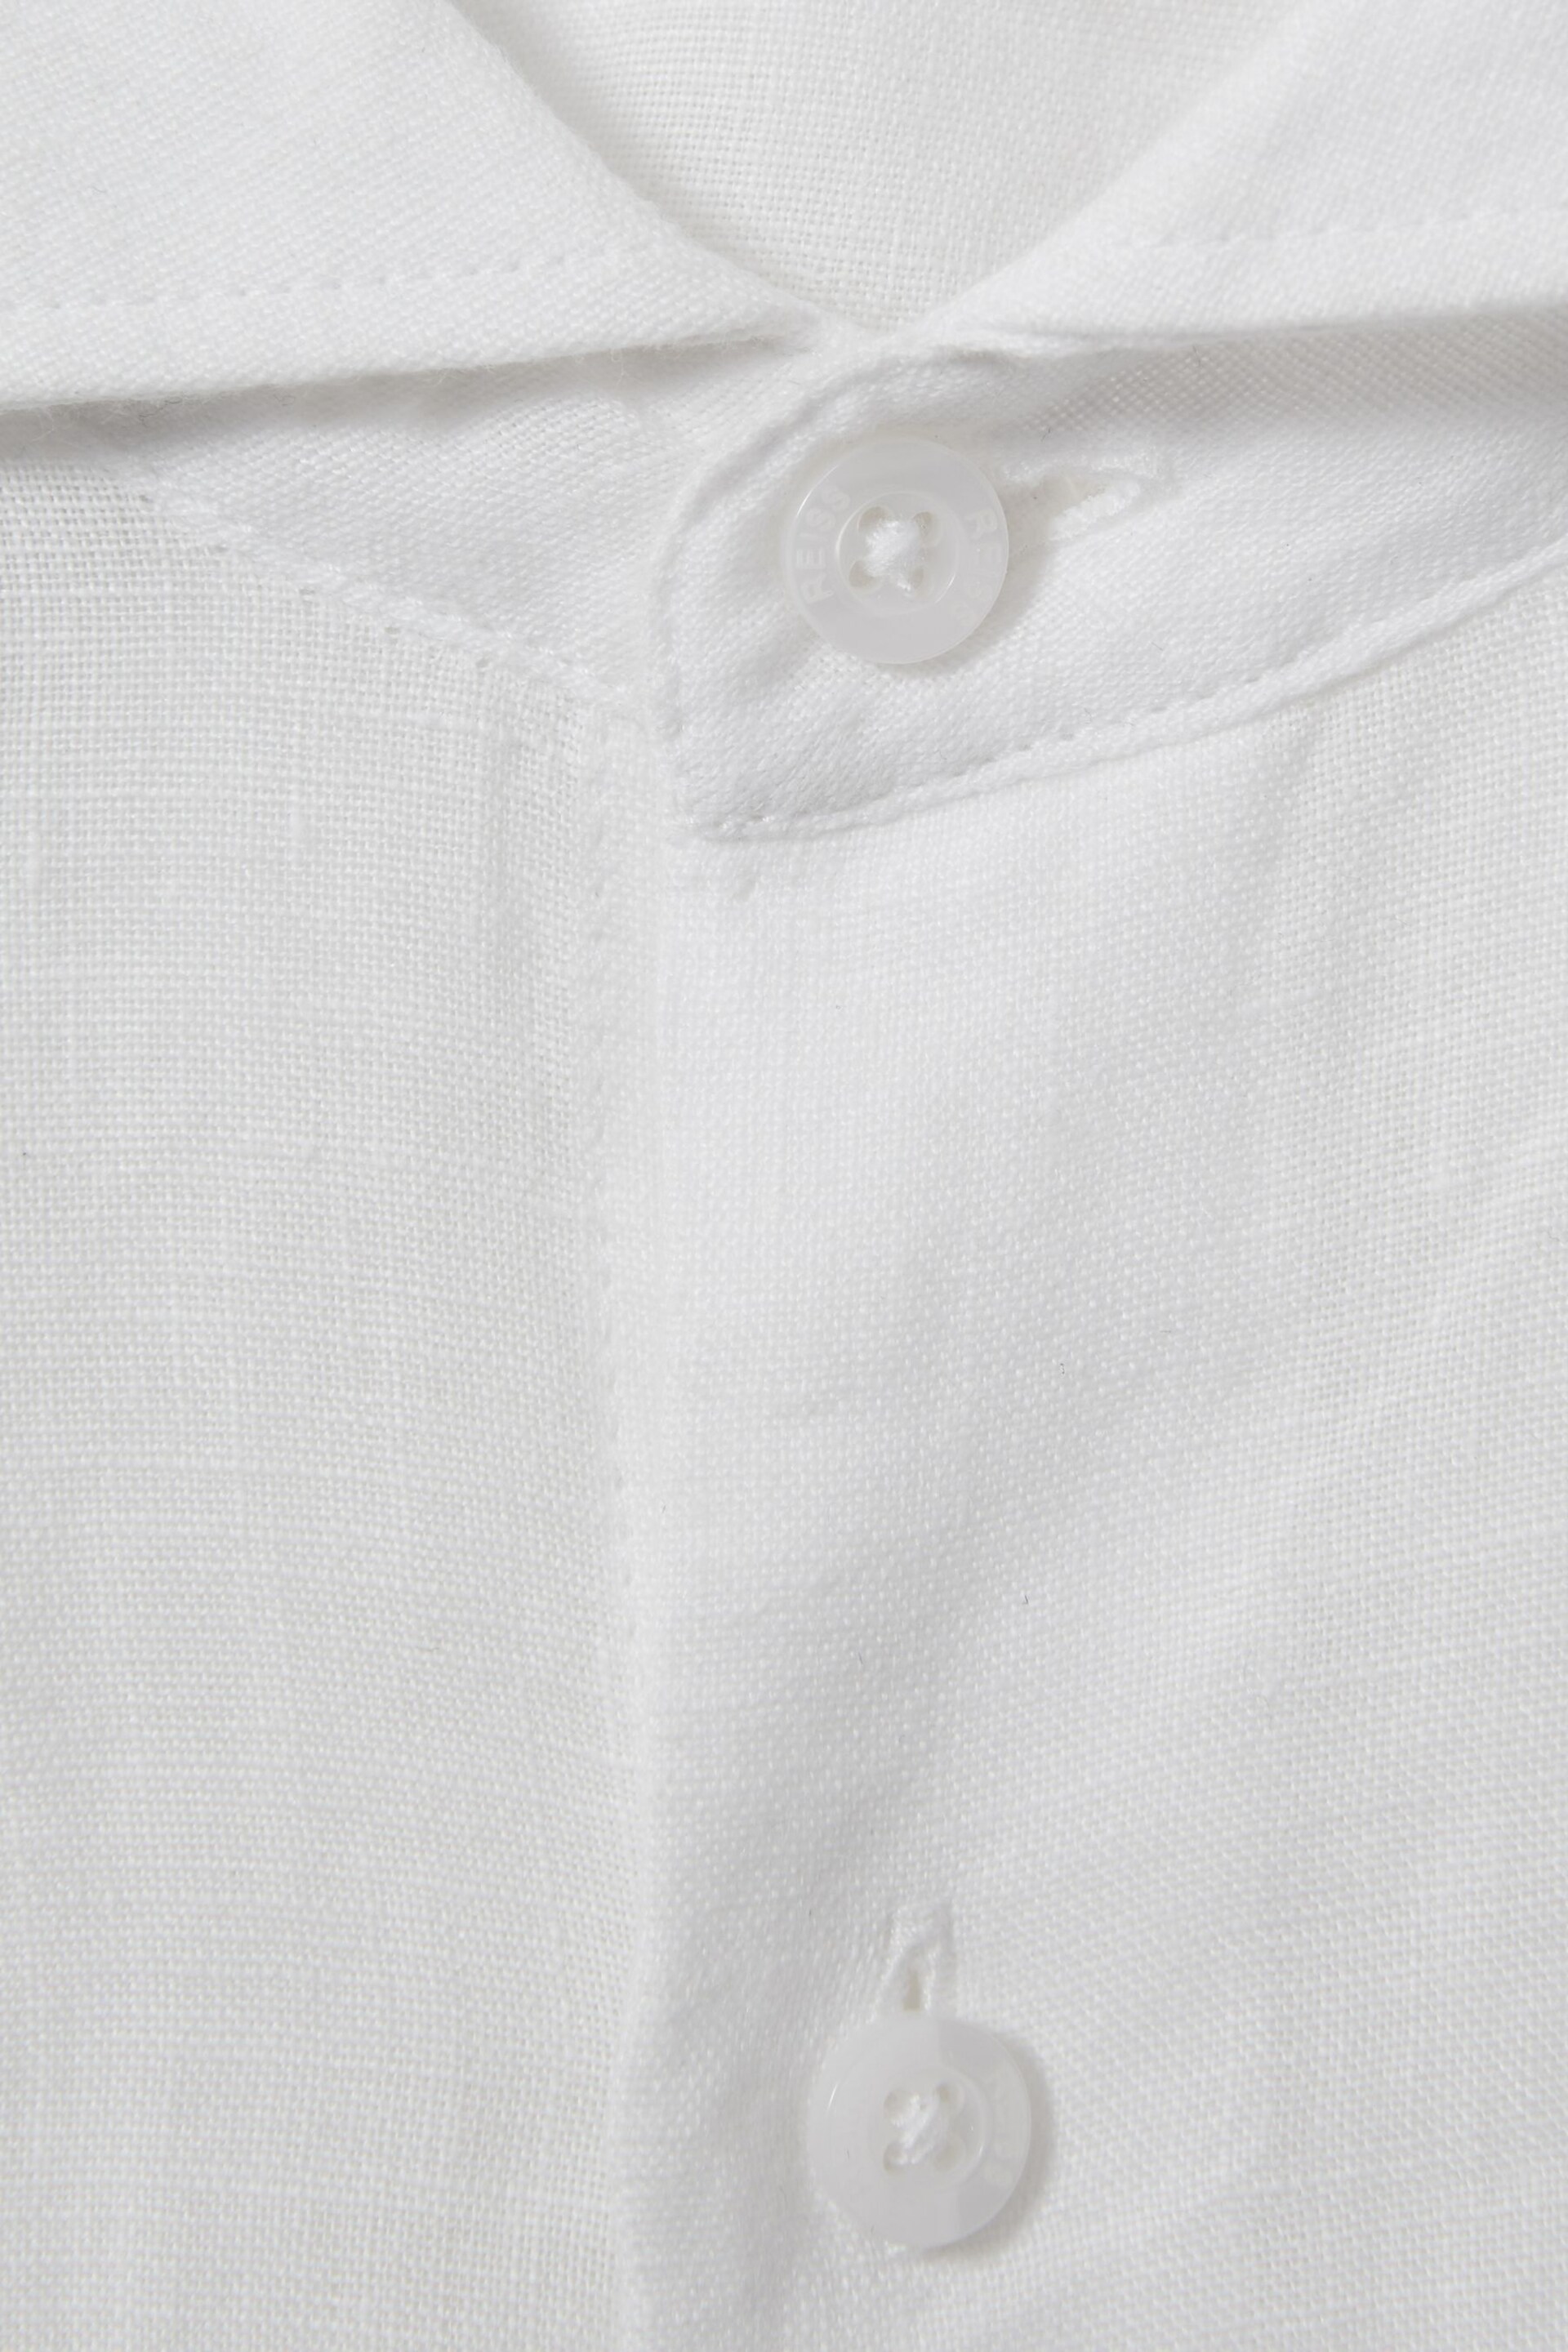 Reiss White Ruban Teen Linen Cutaway Collar Shirt - Image 4 of 5